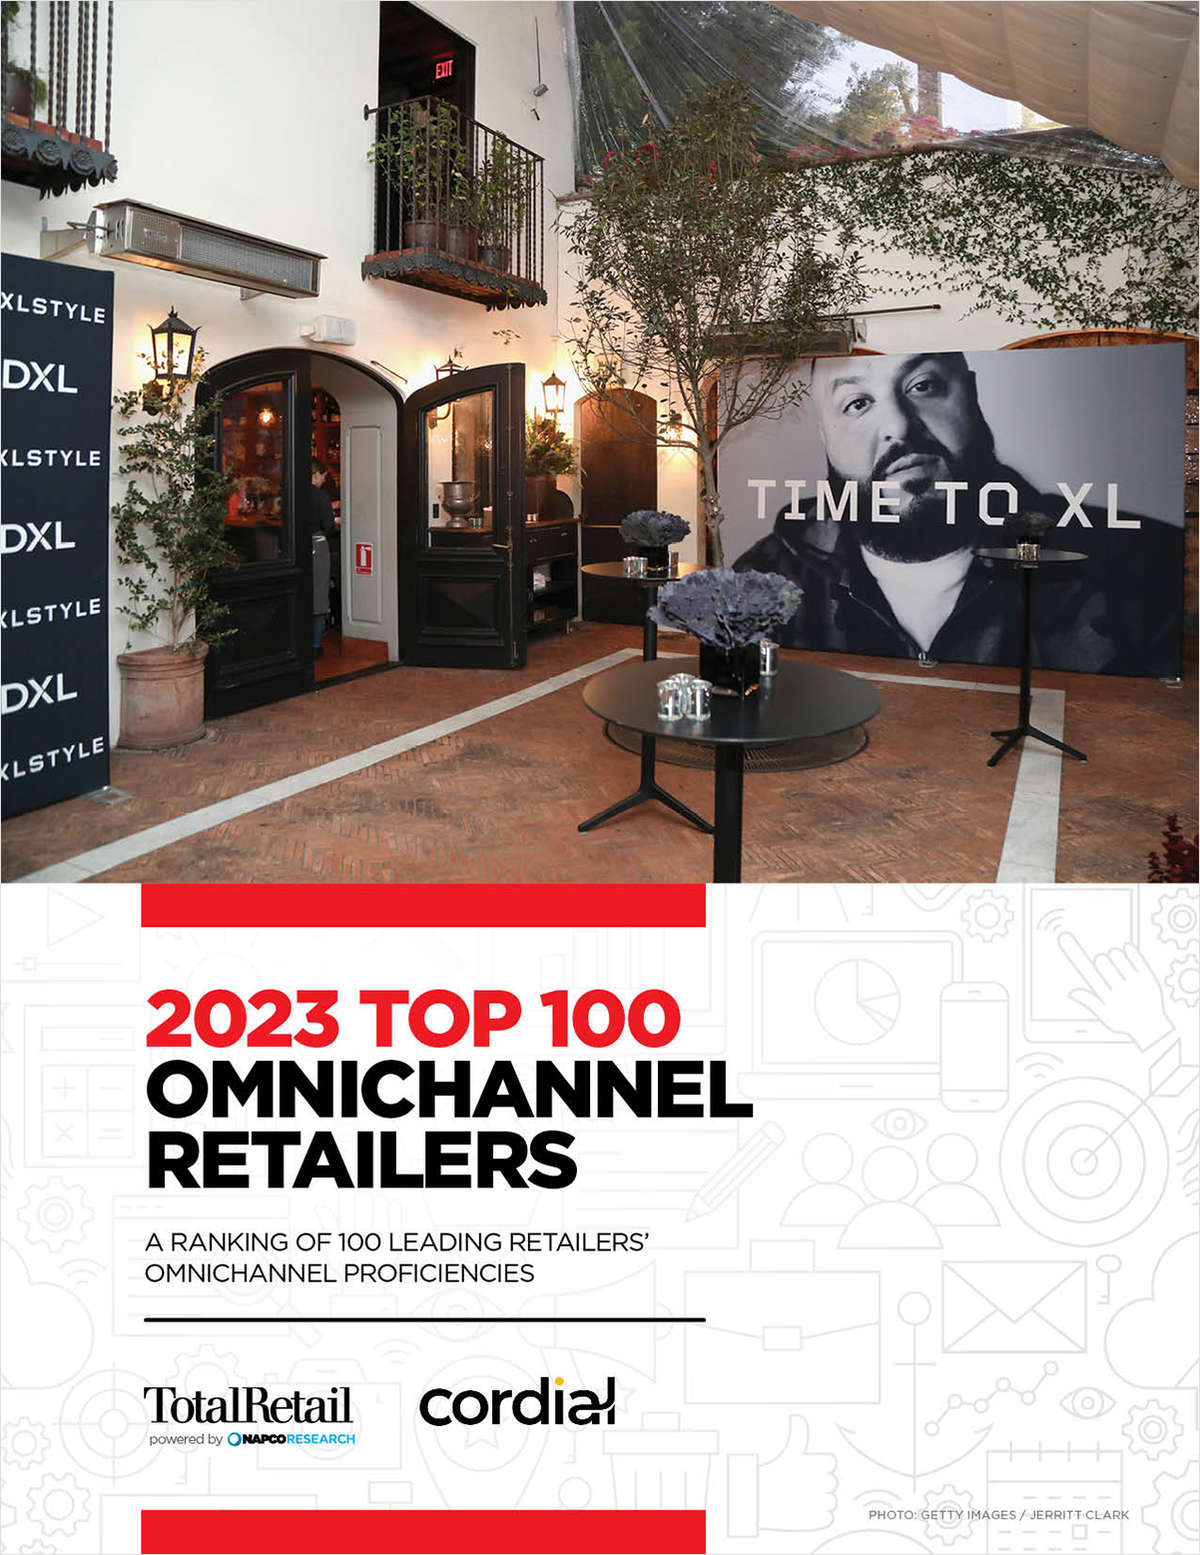 2023 Top 100 Omnichannel Retailers